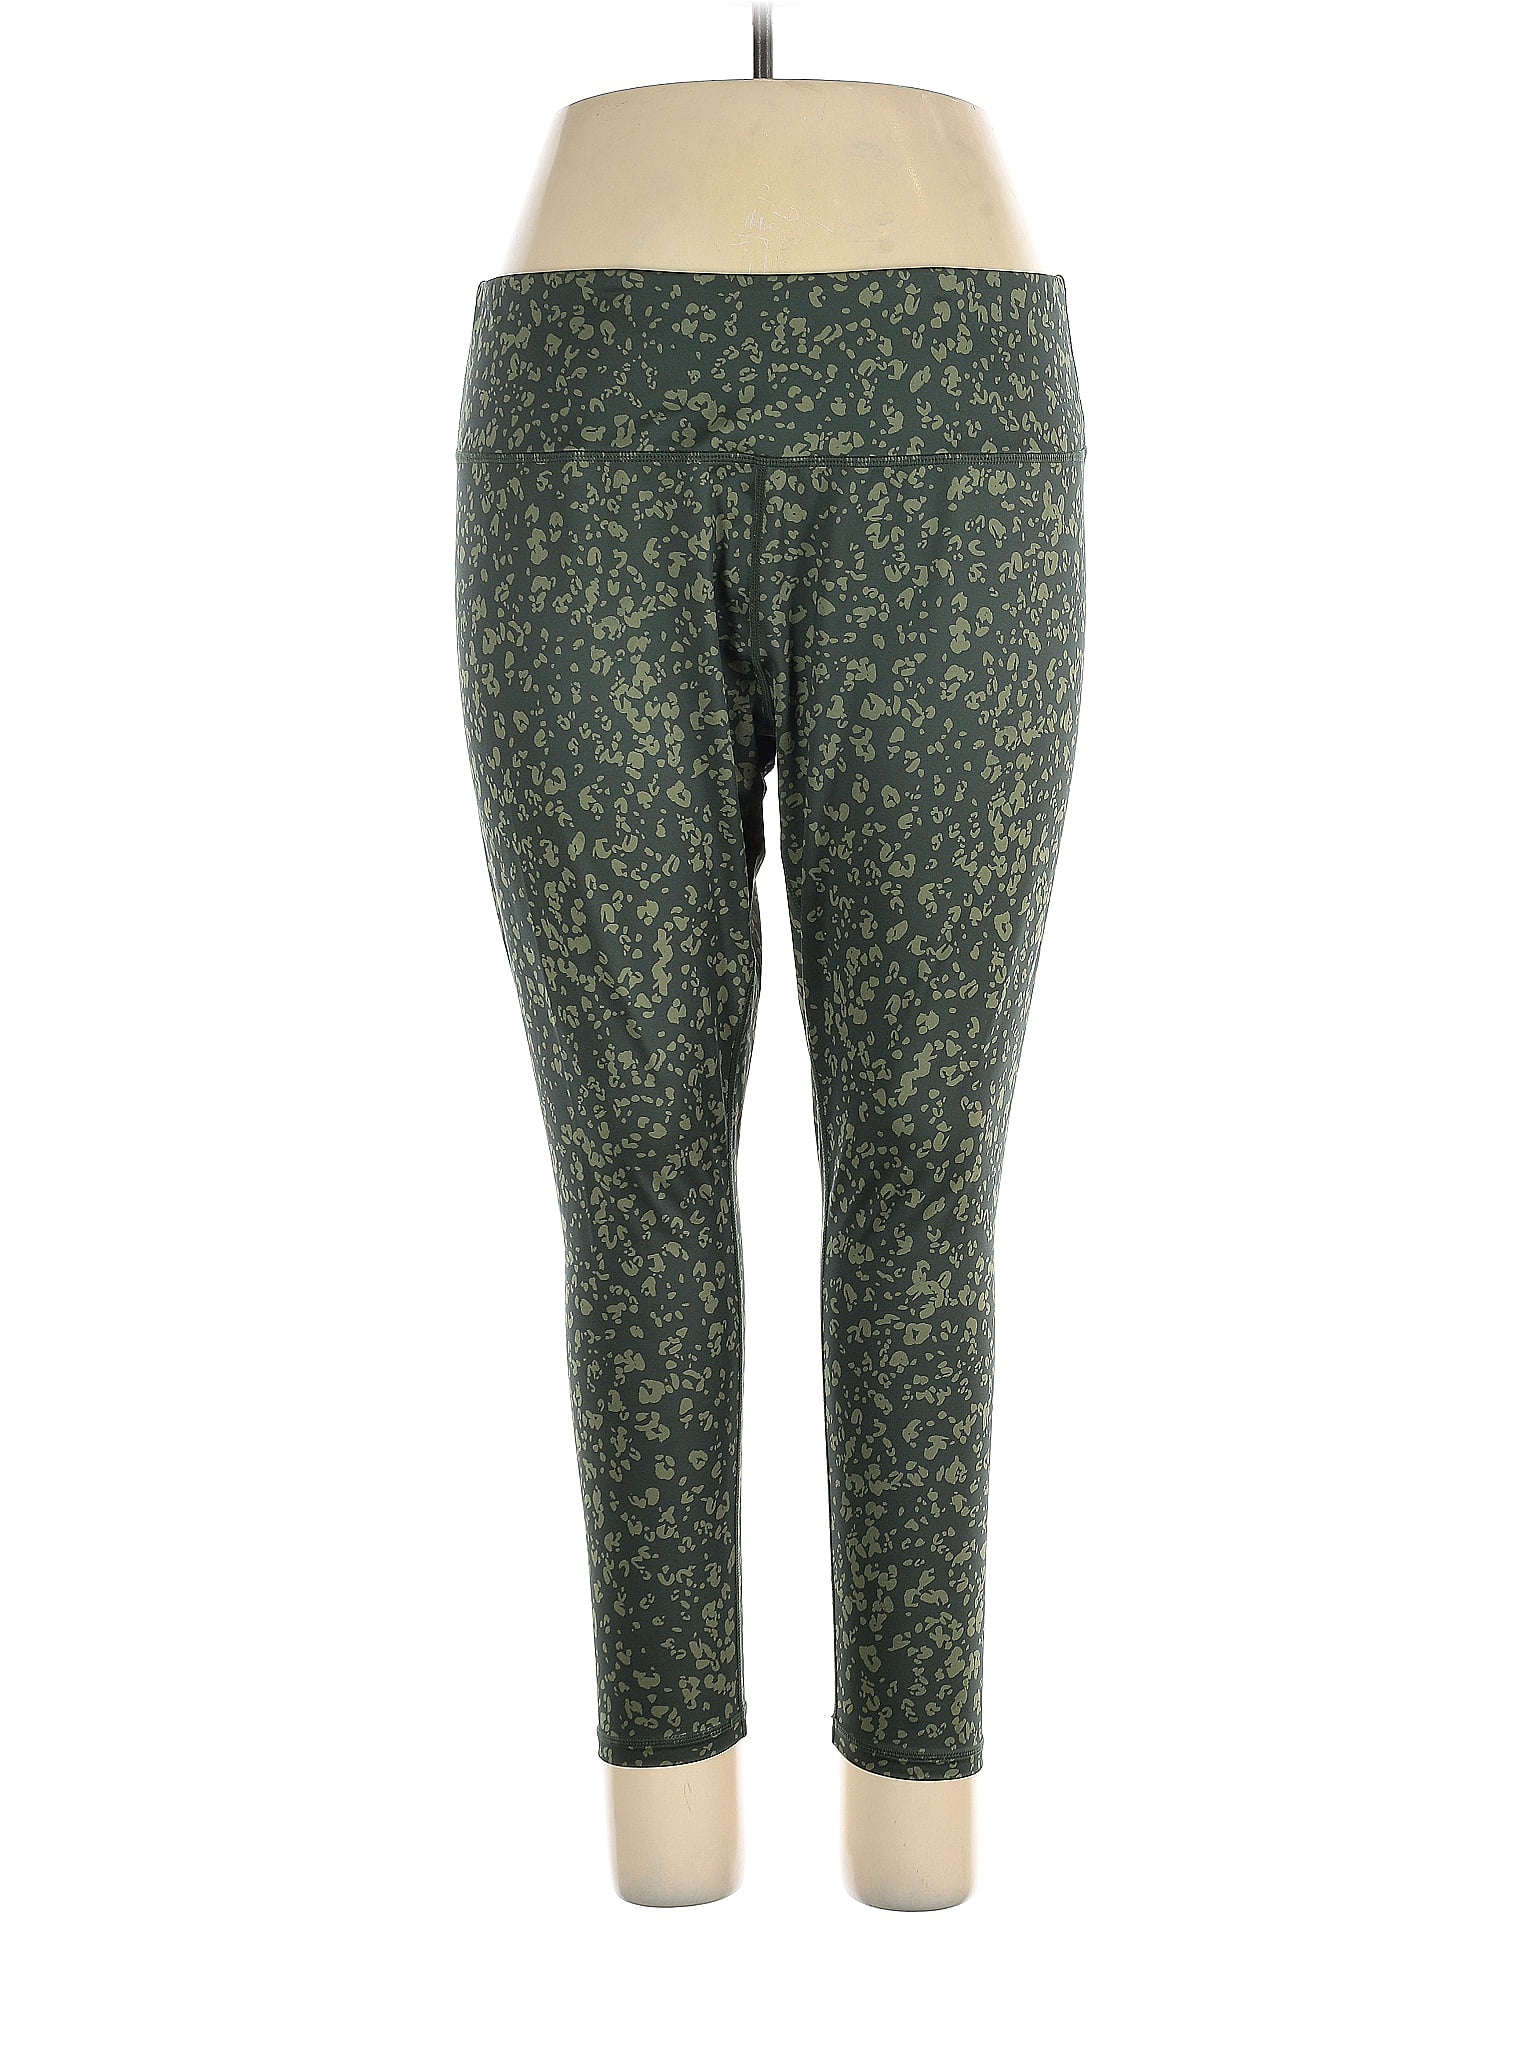 Z by Zella Leopard Print Green Leggings Size 2X (Plus) - 68% off